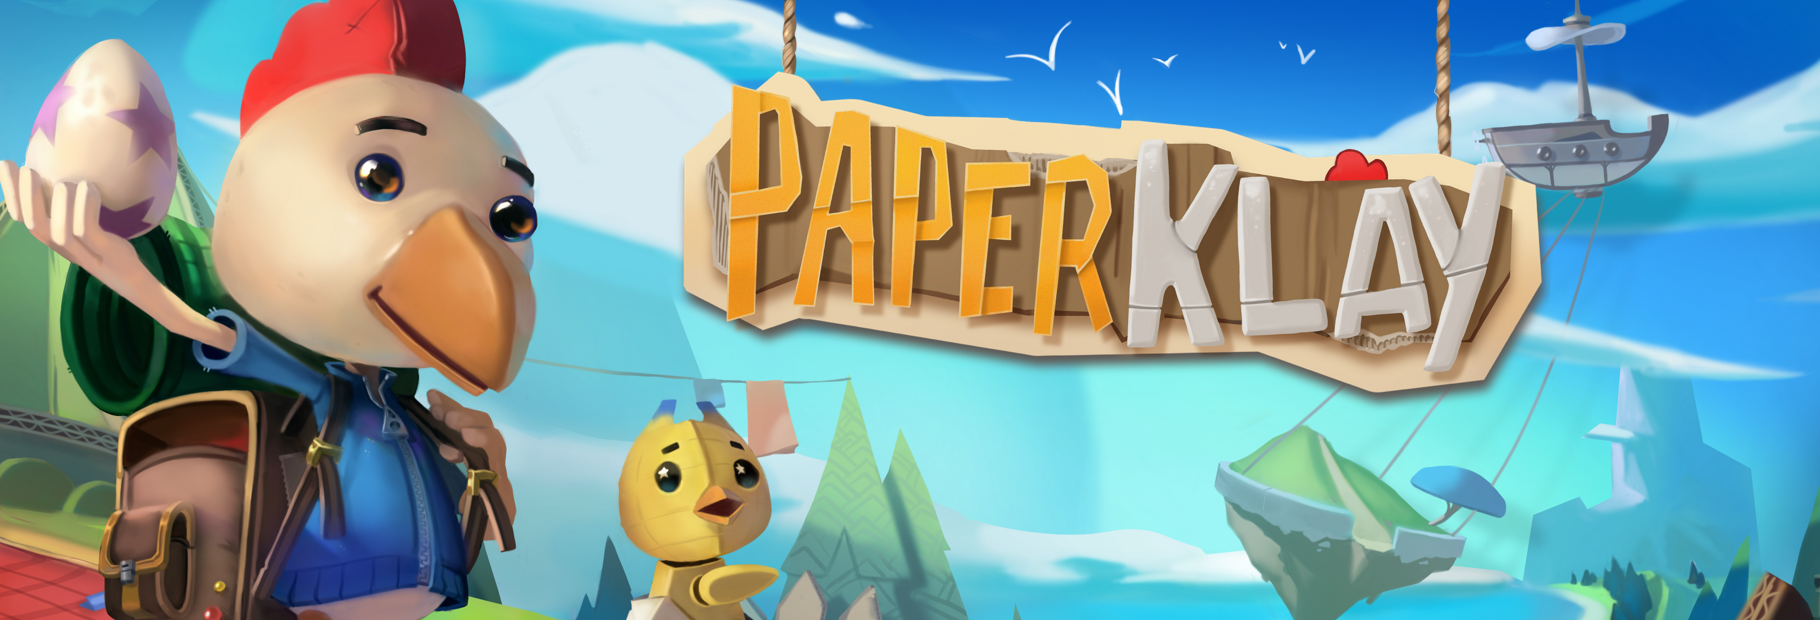 PaperKlay_PanoramicWebsite